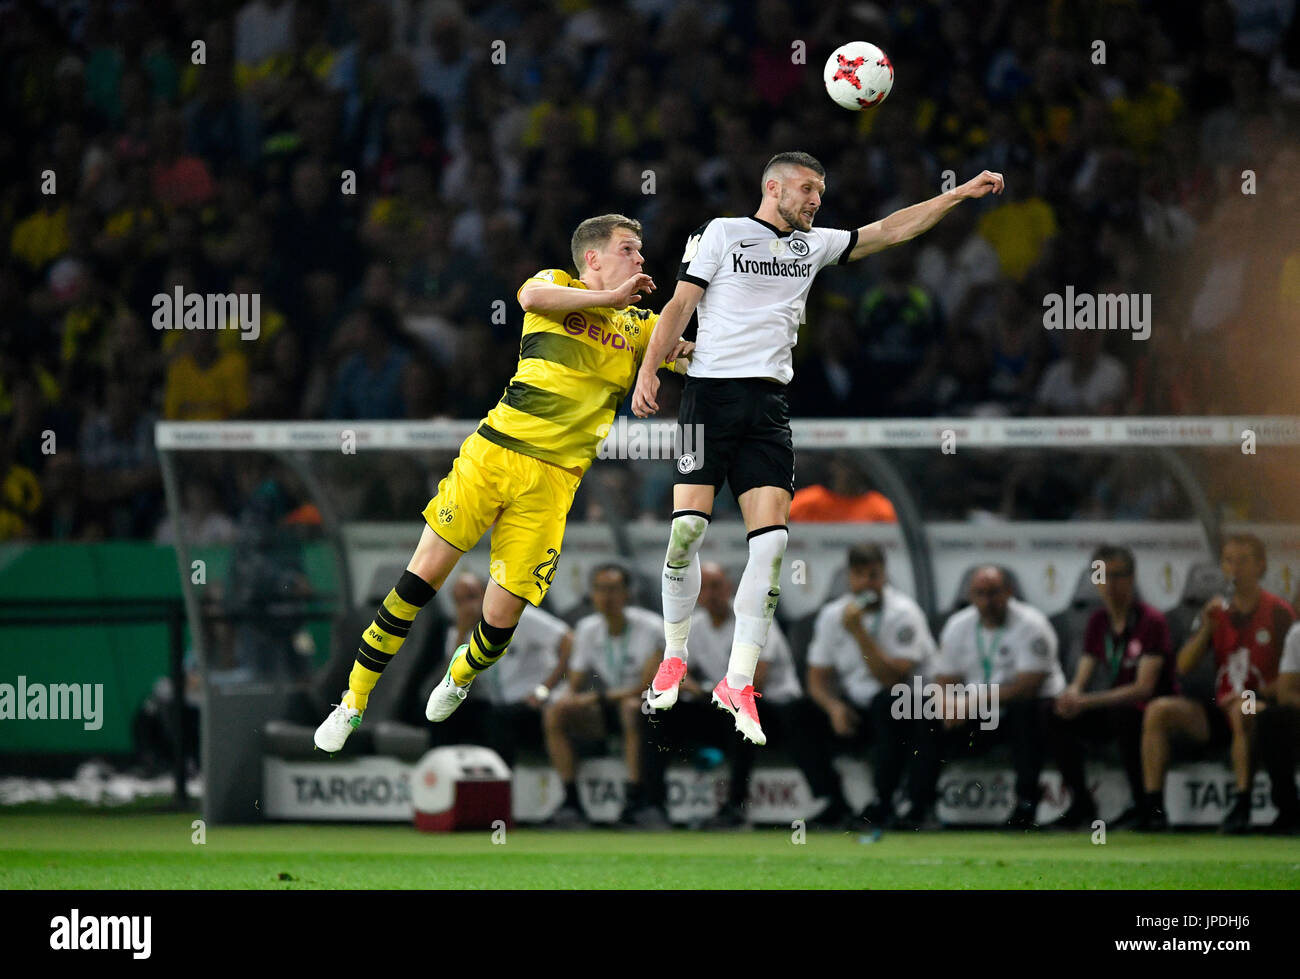 Header duel, duel, action Matthias Ginter BVB Borussia Dortmund against Ante Rebic Eintracht Frankfurt, DFB-Pokalfinale Stock Photo